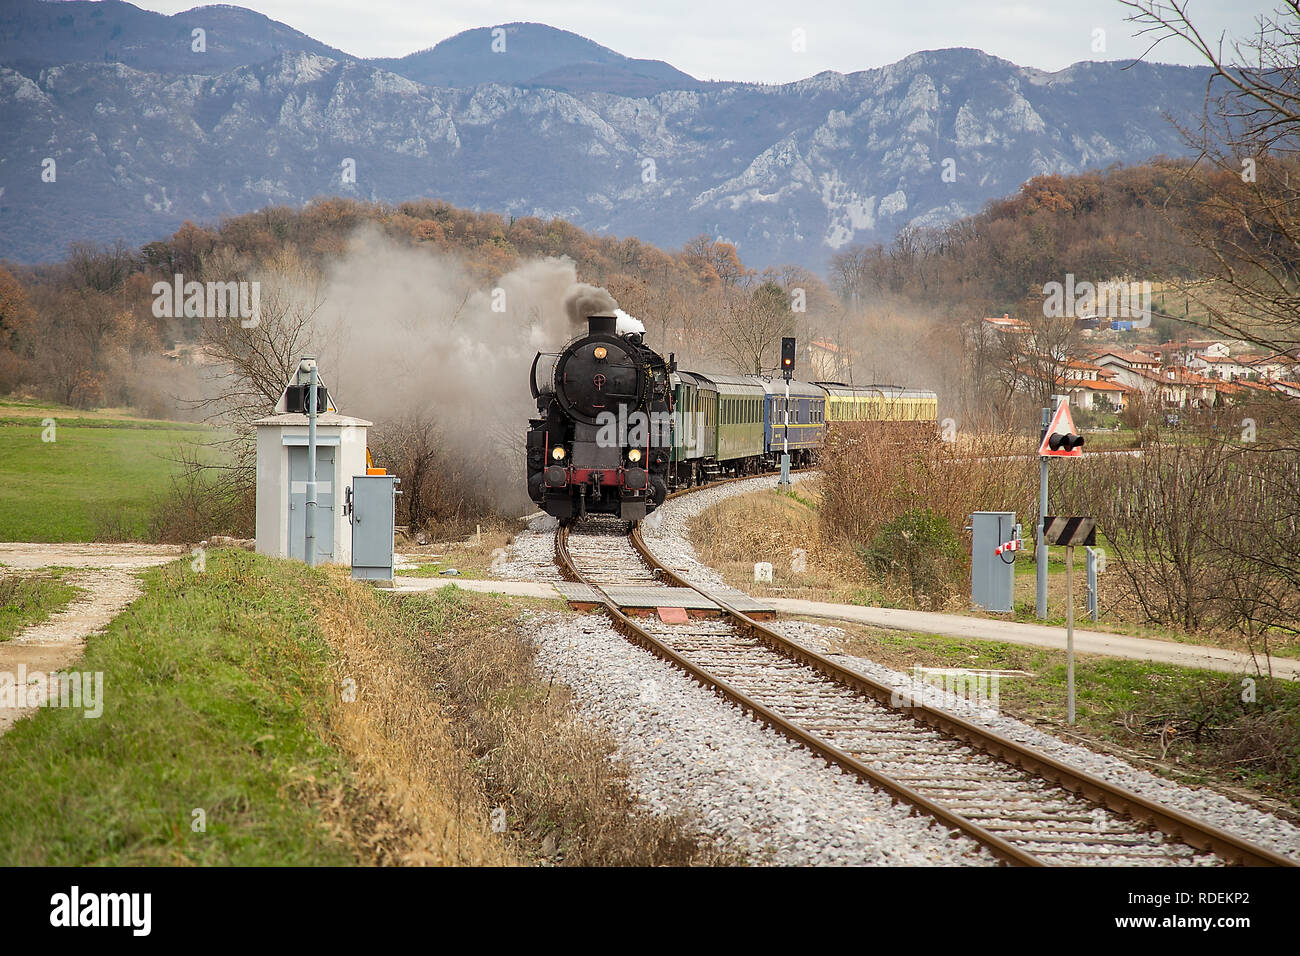 Il vecchio treno a vapore lasciando la stazione ferroviaria di Ajdovščina, Slovenia, l'Europa. Un sacco di nero e grigio vapore nascondendo la locomotiva, frame completo Foto Stock